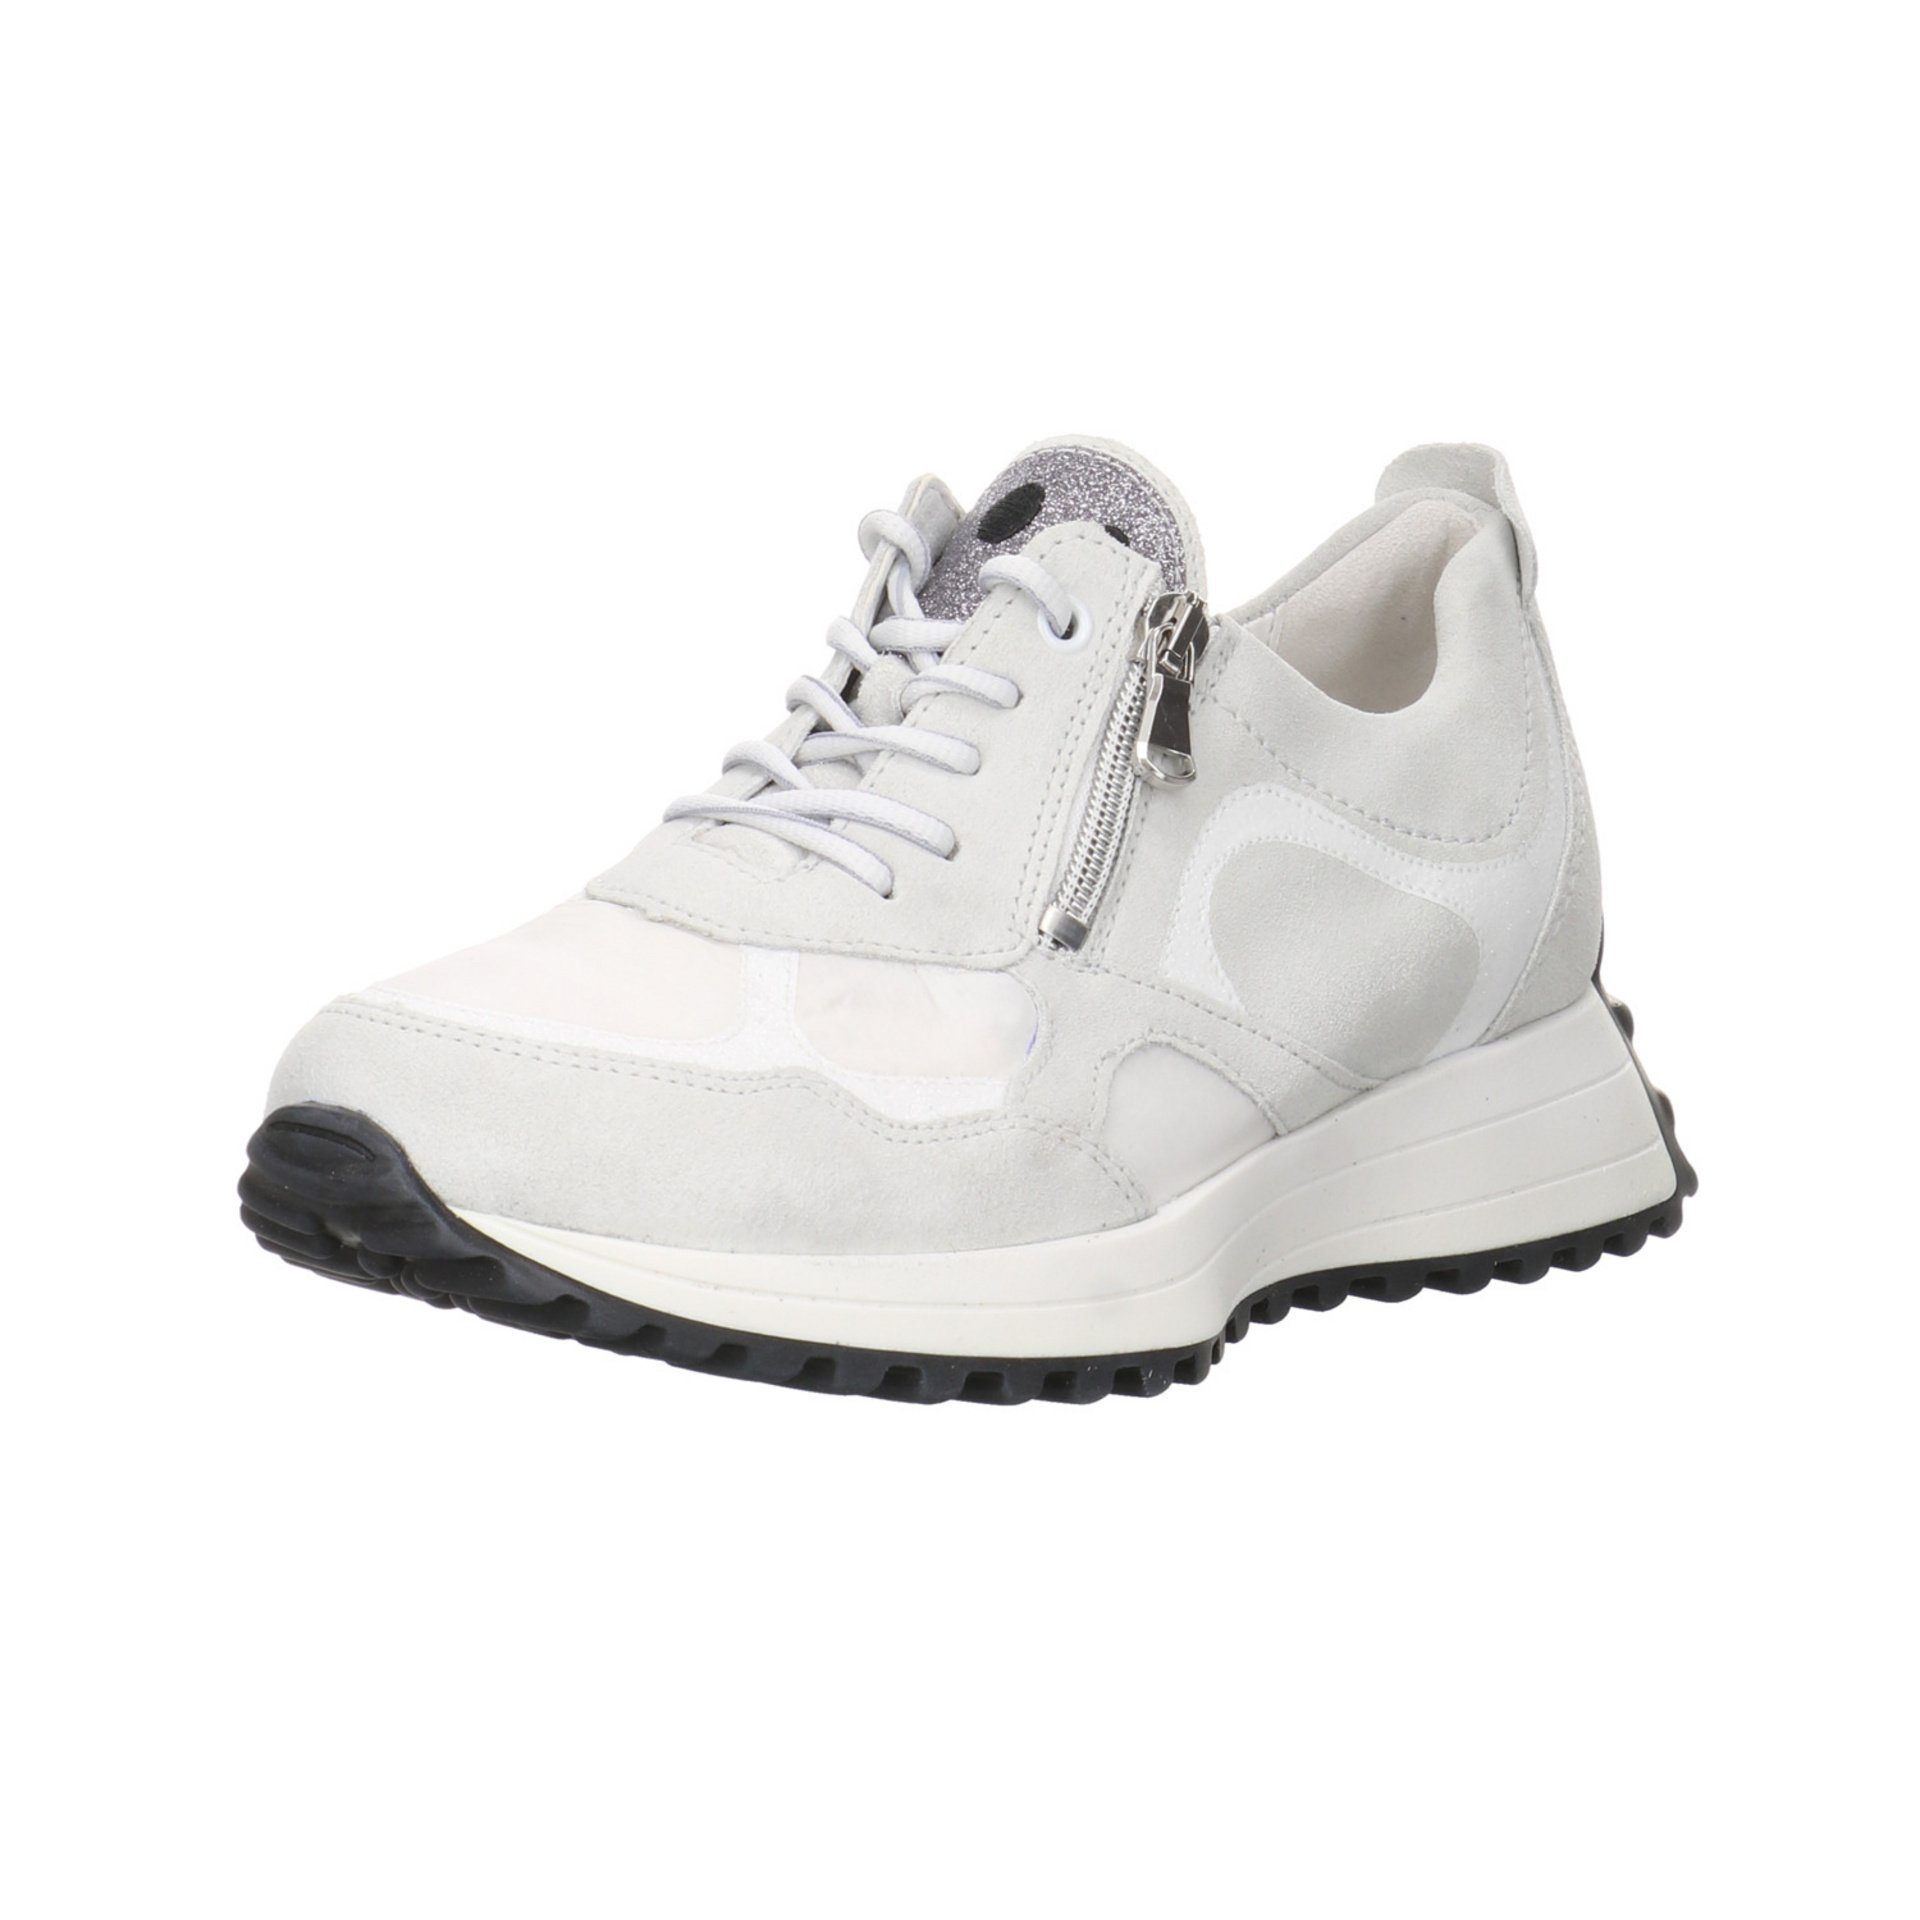 Waldläufer Damen Sneaker Schuhe Pinky Sneaker Sneaker Leder-/Textilkombination latte/white